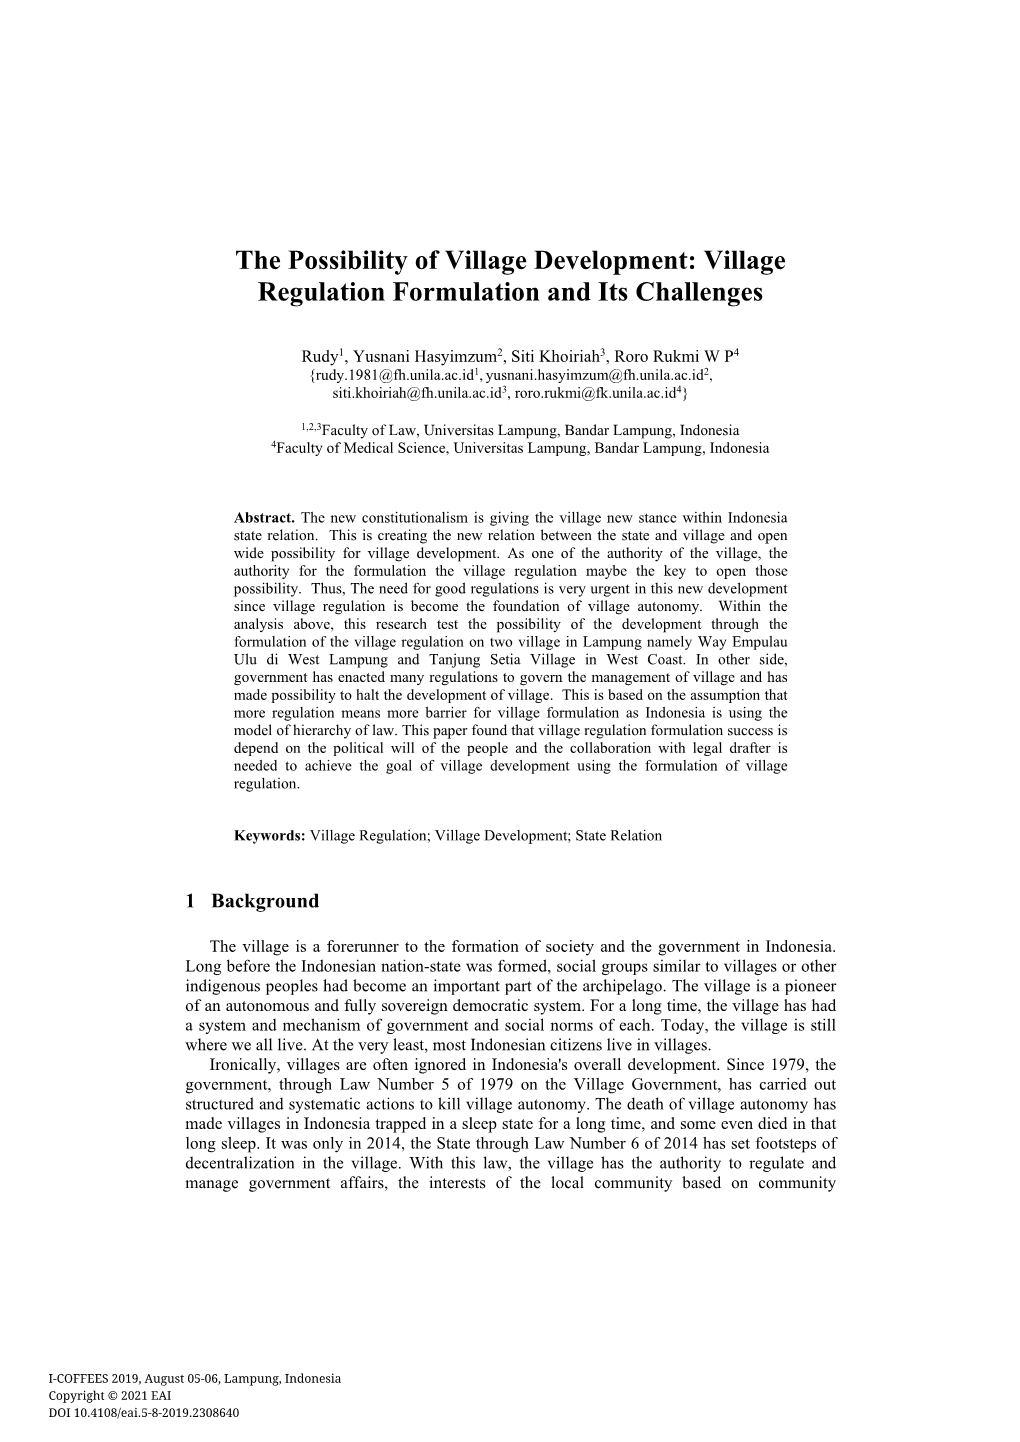 Village Regulation Formulation and Its Challenges